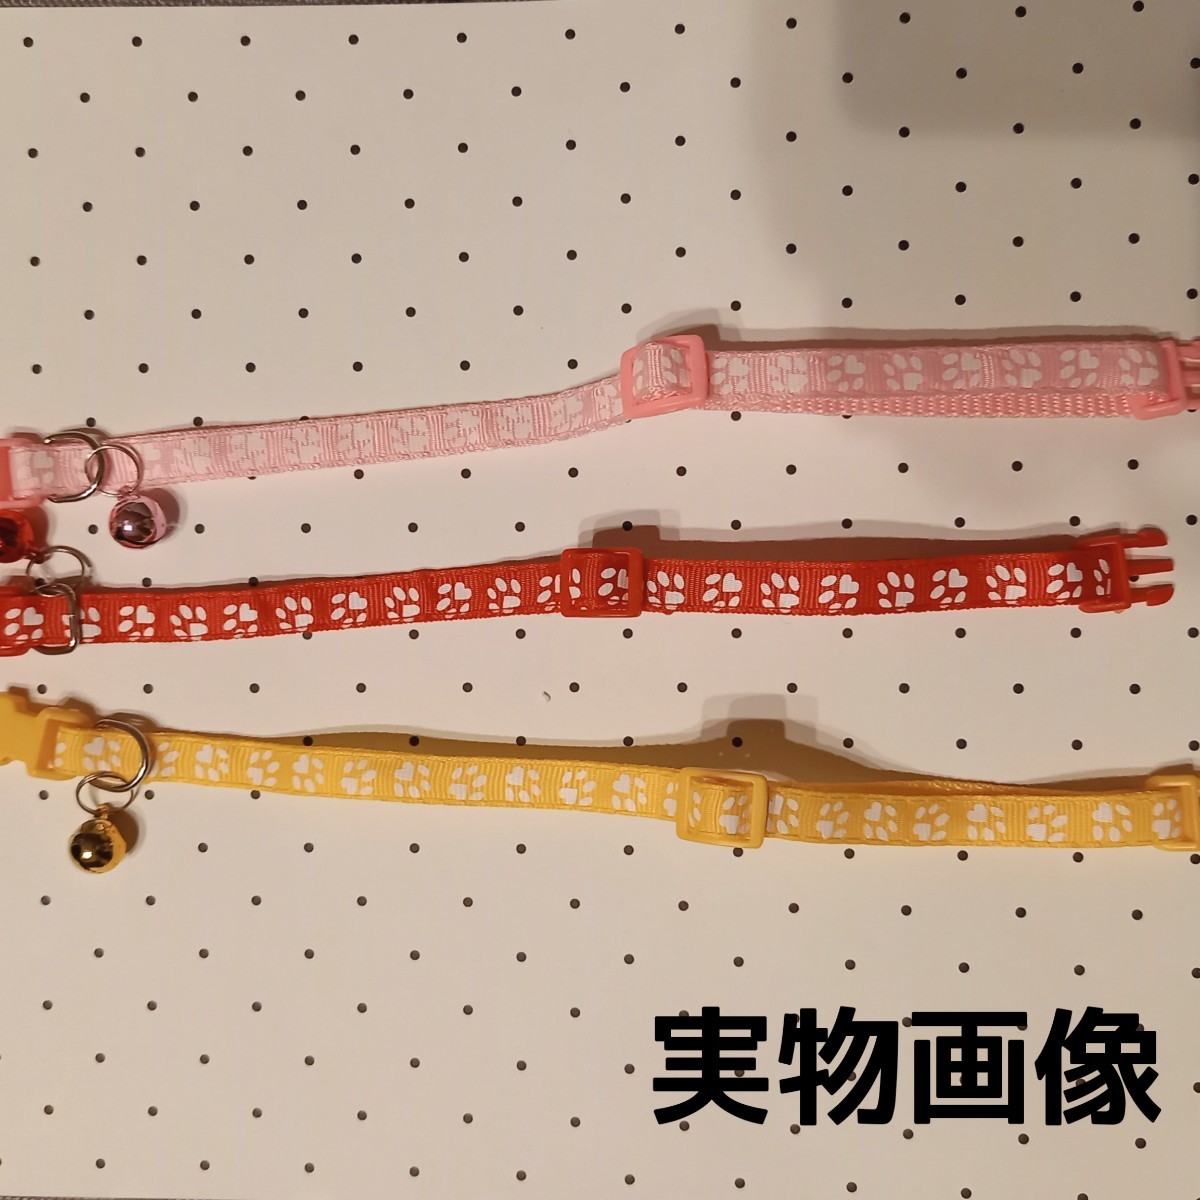 鈴付き 肉球柄 首輪 赤 黄色 ピンク☆3色セット調節可能 バックル 猫 小型犬